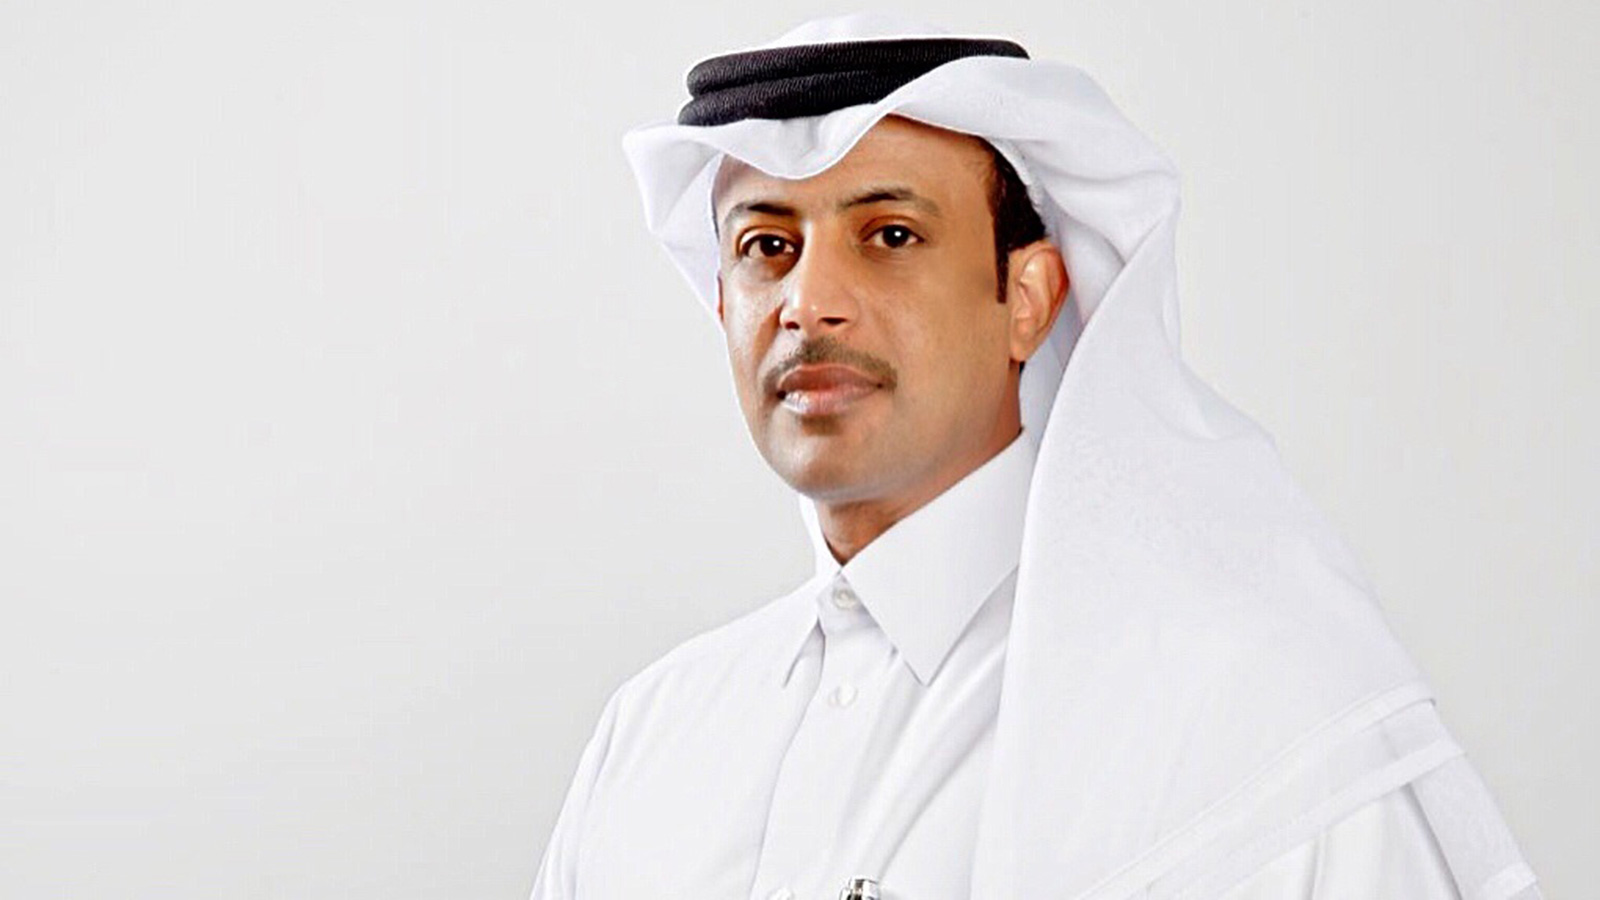 آل سعد: قطر تقدم خدماتها لكافة من يعيشون على أرضها من دون تمييز(الجزيرة نت)